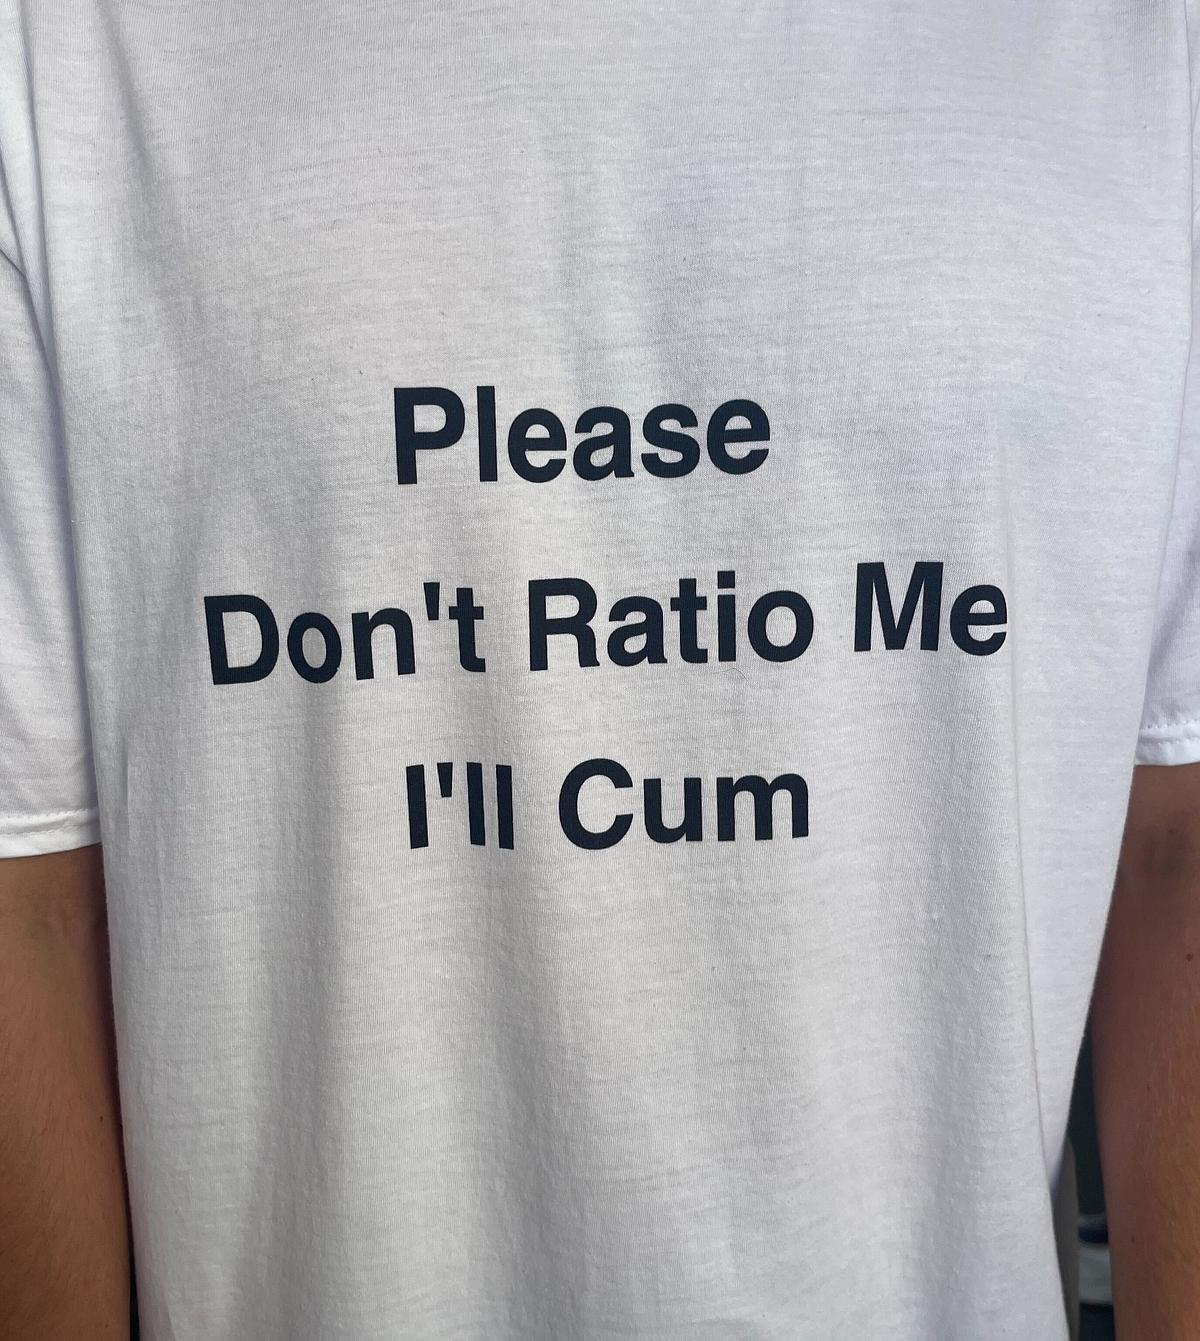 Please Don't Ratio Me - 1l Cum 